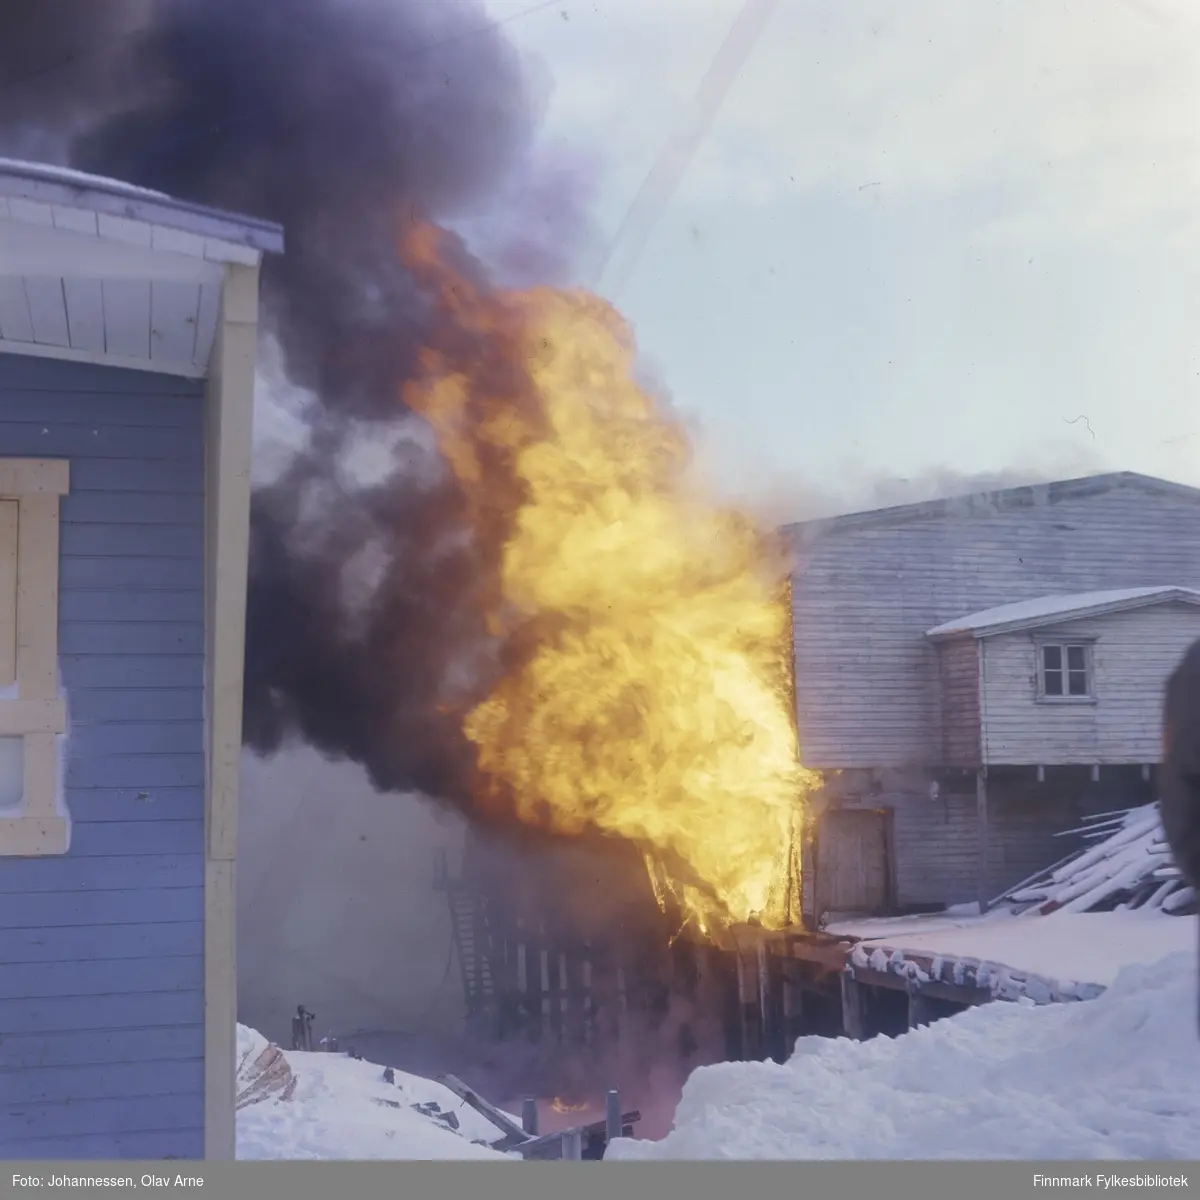 Foto av brann på kai, antagelig i Finnmark 

Muligens Produksjonslageret i Båtsfjord (fiskebruk) eller Trygve Nilsen kaia (usikkert hvilket)

Foto trolig tatt på 1960/70-tallet